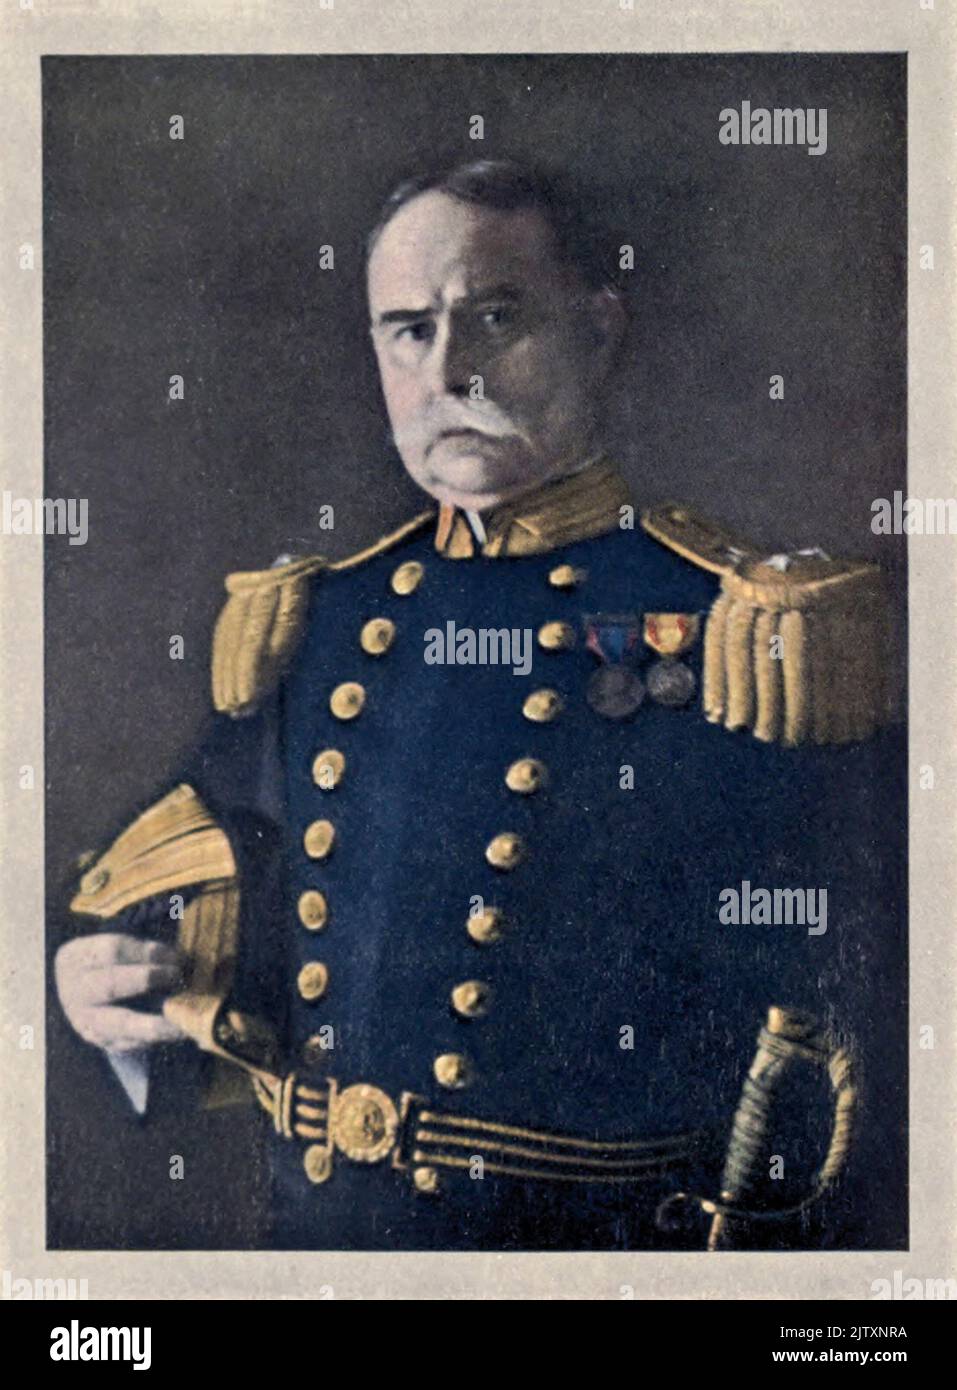 CONTRE-AMIRAL AUSTIN M. KNIGHT, U. S. N. Austin Melvin Knight (16 décembre 1854 – 26 février 1927) était un amiral de la Marine américaine. Il a été commandant en chef de la flotte asiatique des États-Unis de 1917 à 1918. Banque D'Images